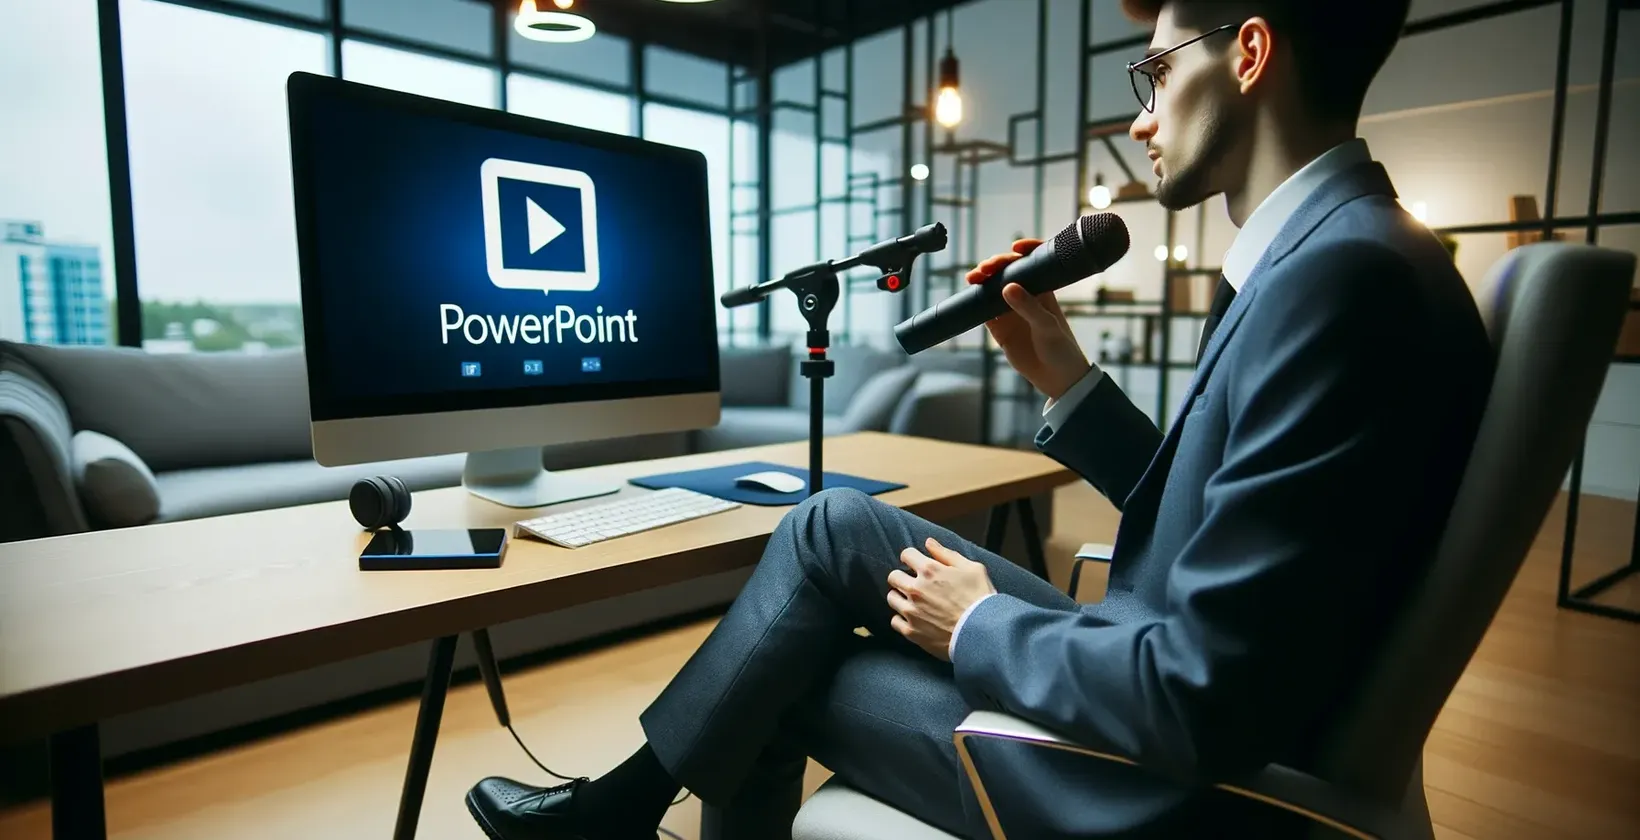 办公室里拿着麦克风的男子看着显示PowerPoint标识的显示器。